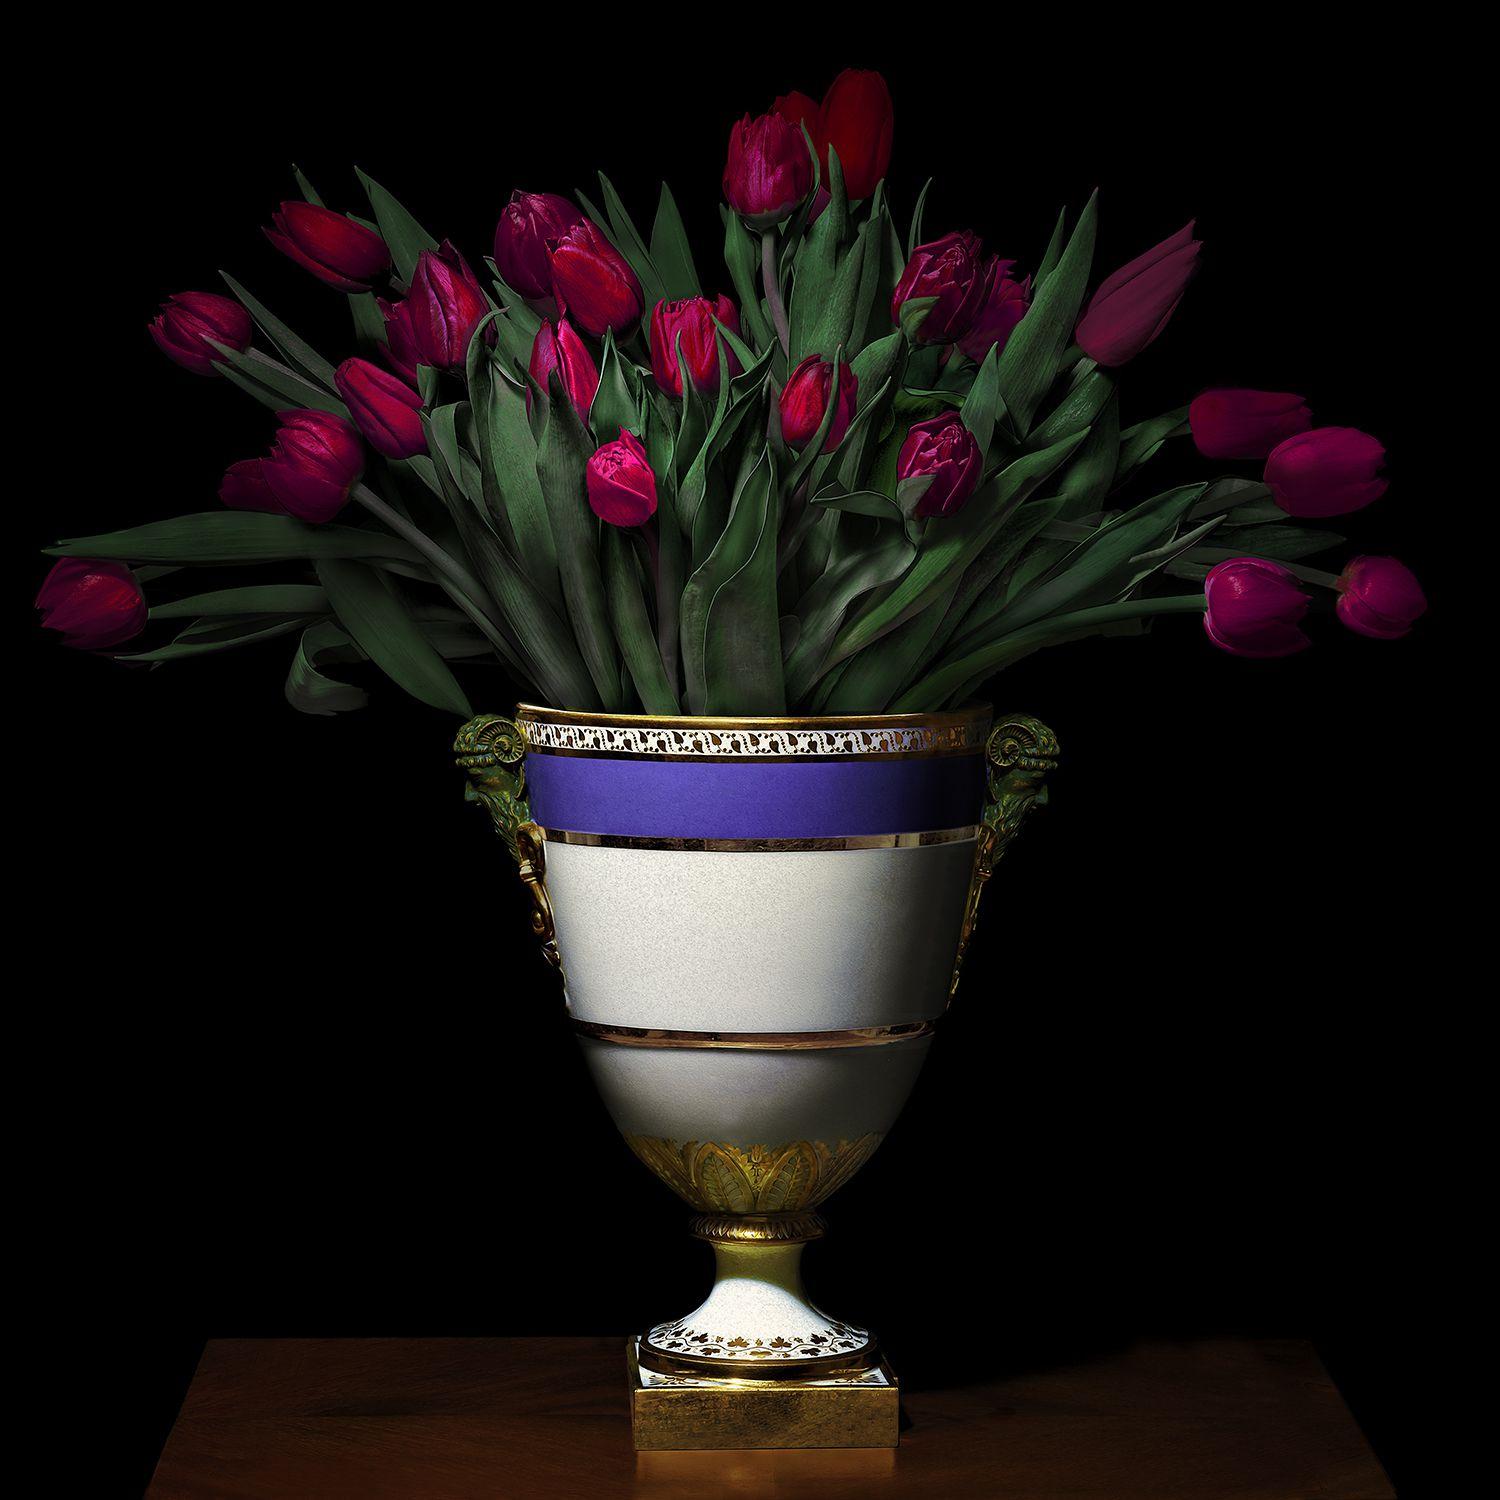 Tulipes dans un vase bleu, blanc et or - Photograph de T.M. Glass